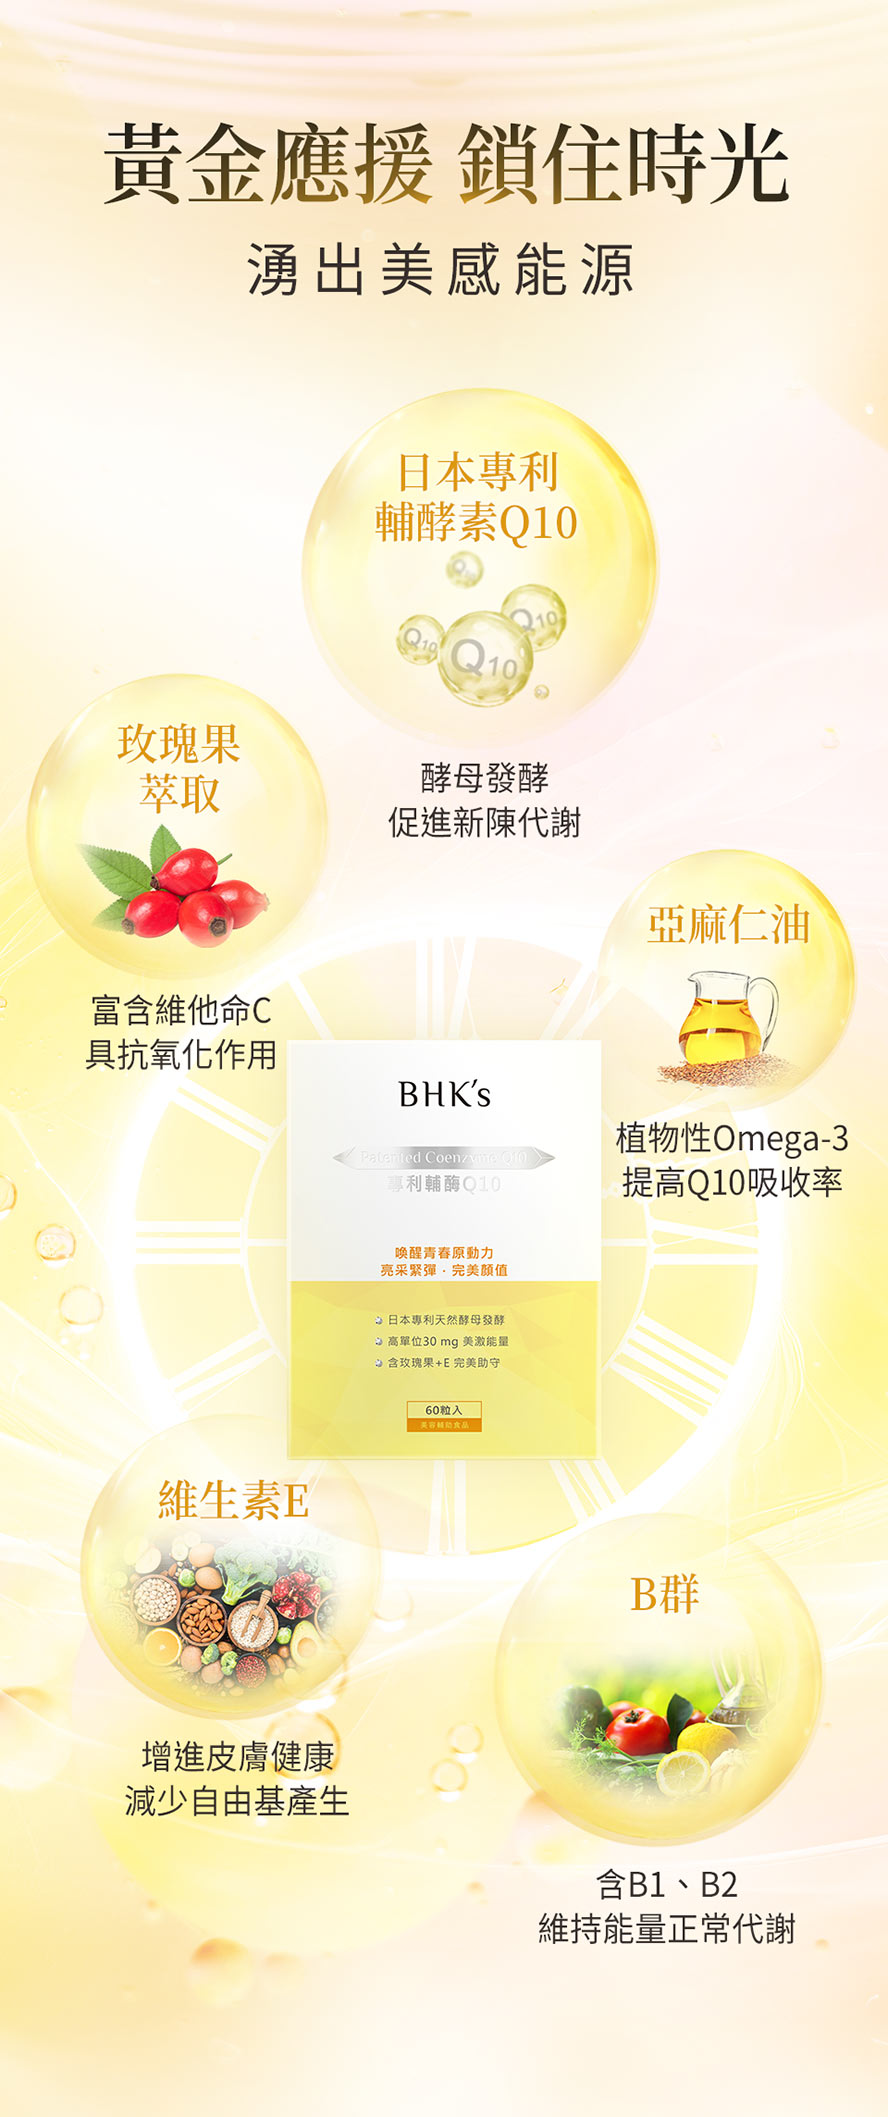 BHKsQ10使用日本專利天然酵母發酵。